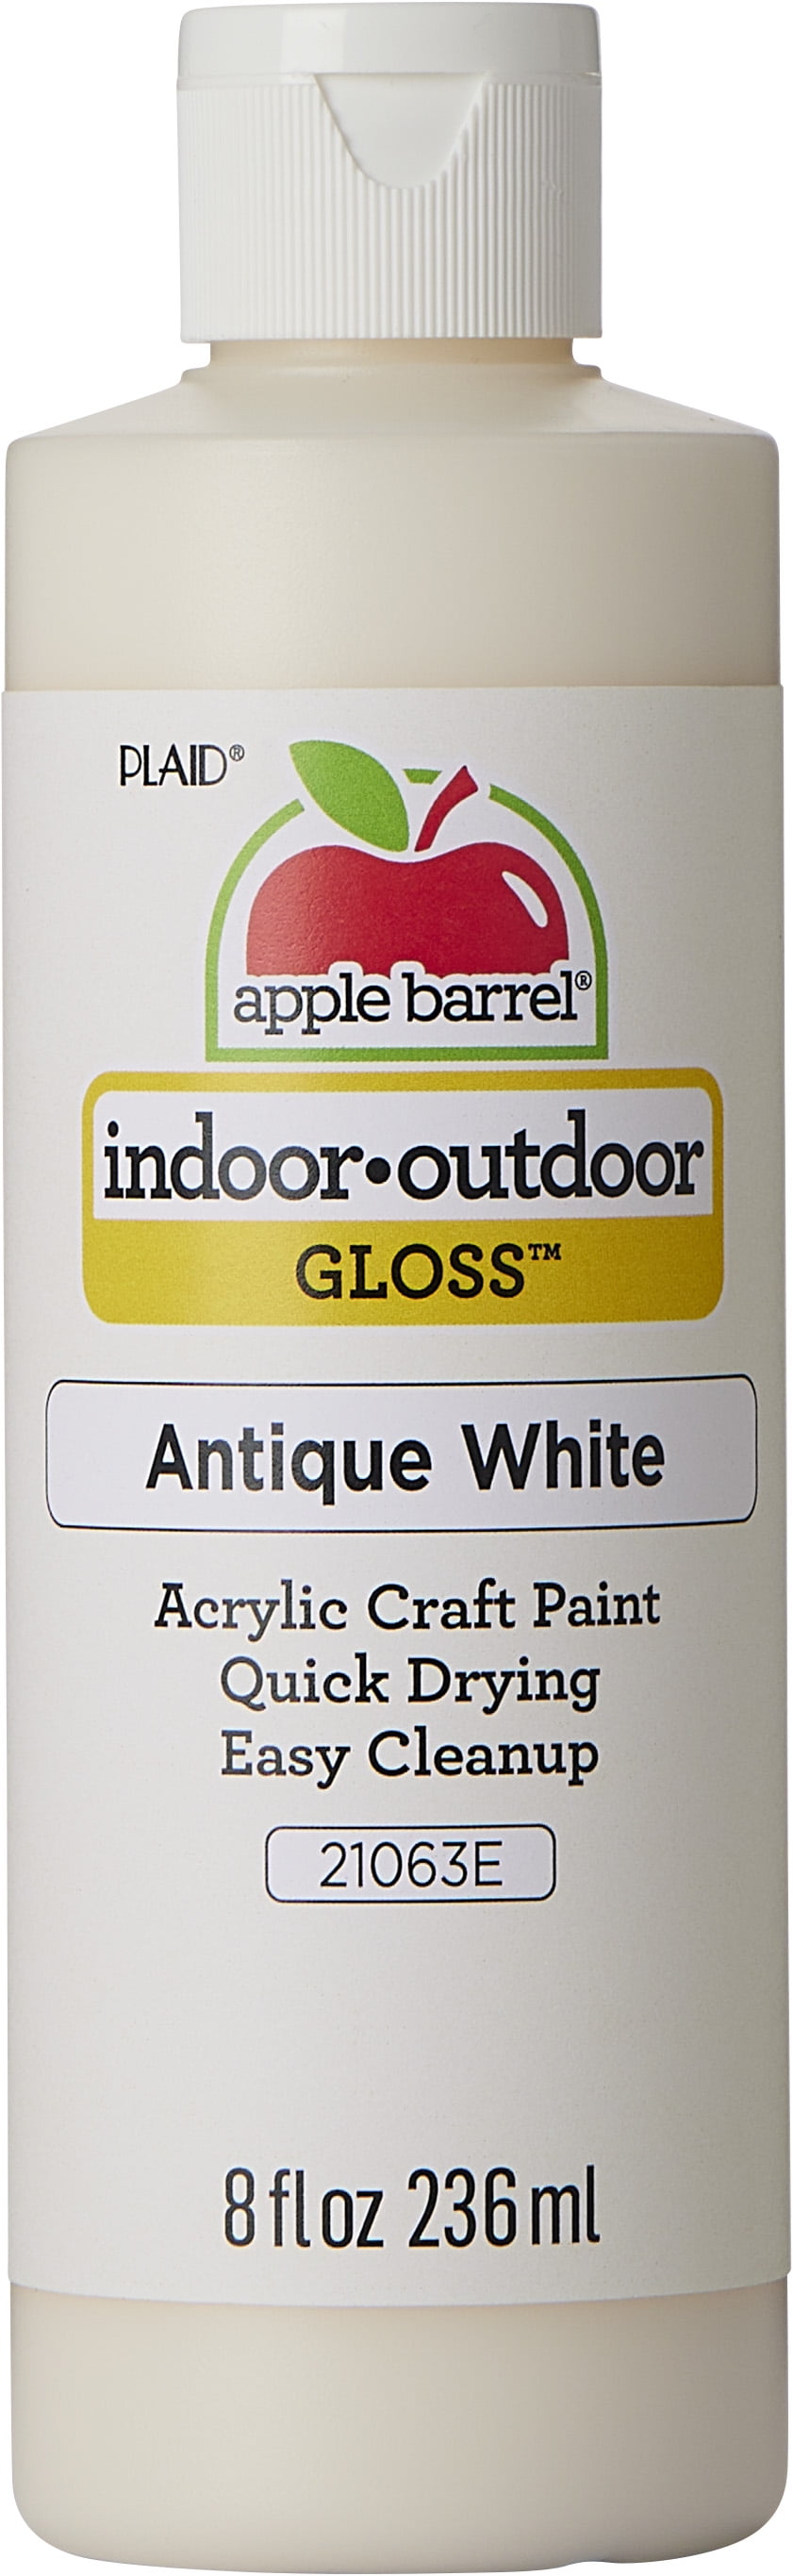 Shop Plaid Apple Barrel ® Colors - White, 8 oz. - 20403 - 20403